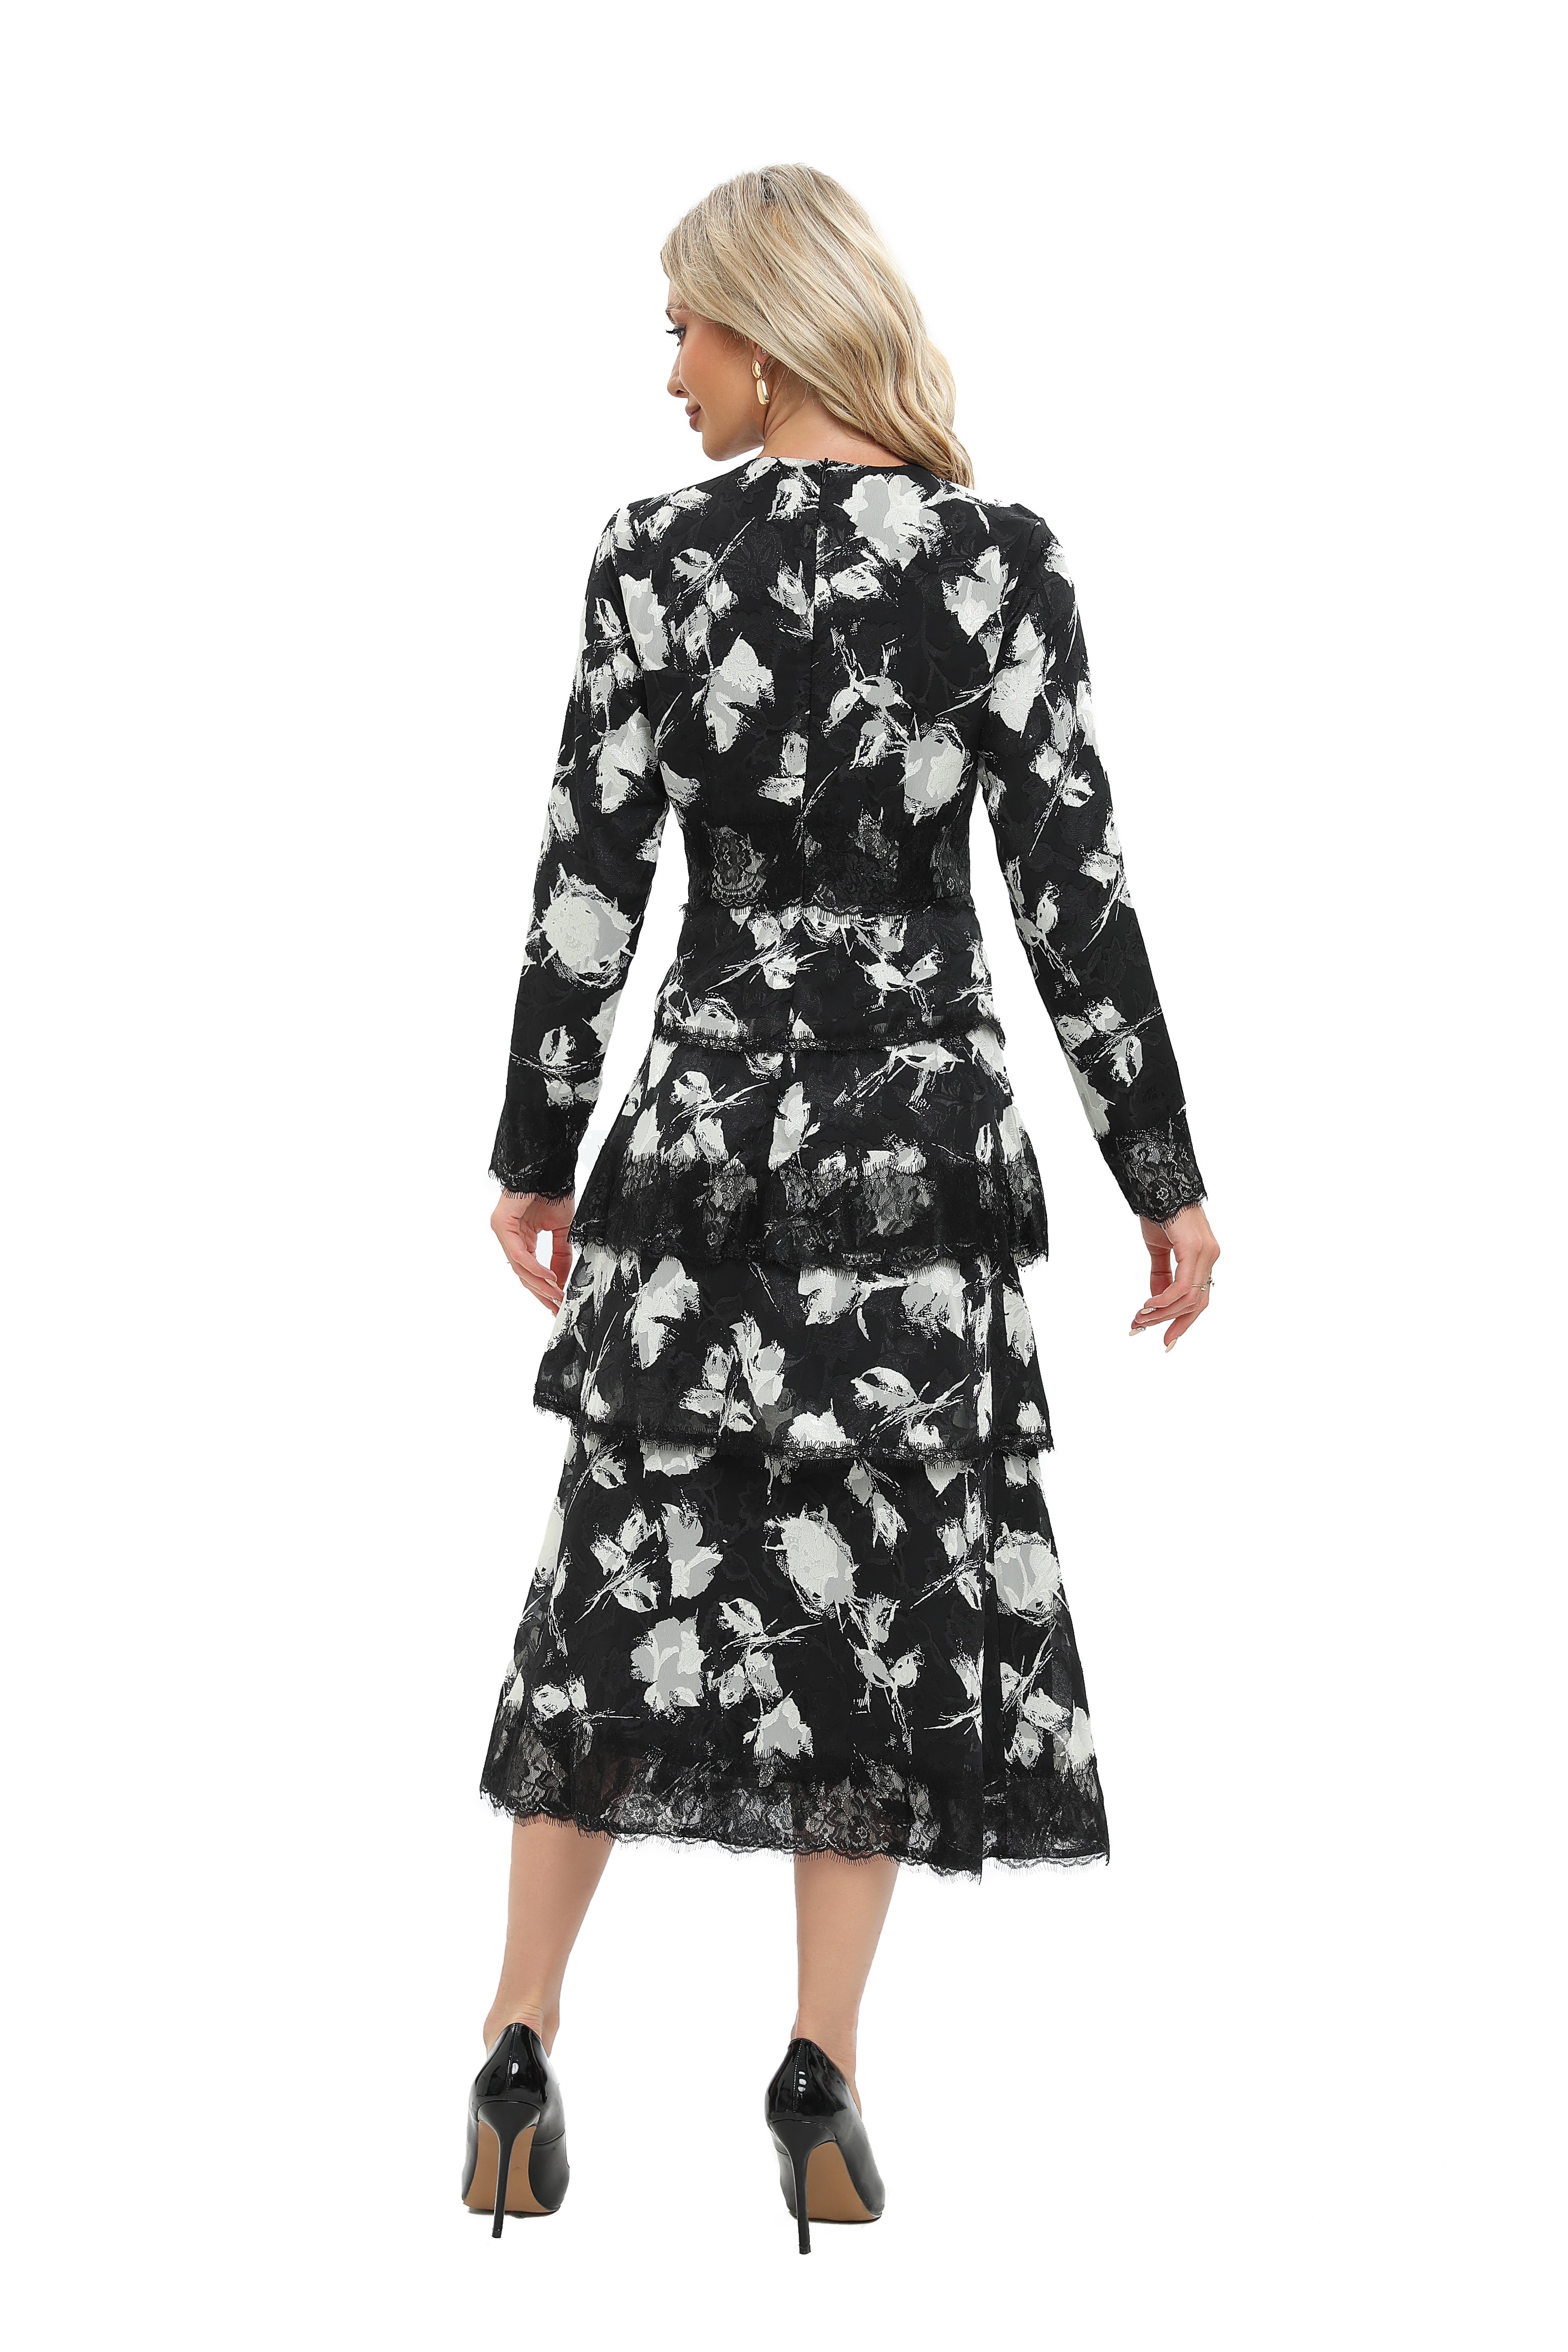 Monochrome Print Lace Detail Midi Dress